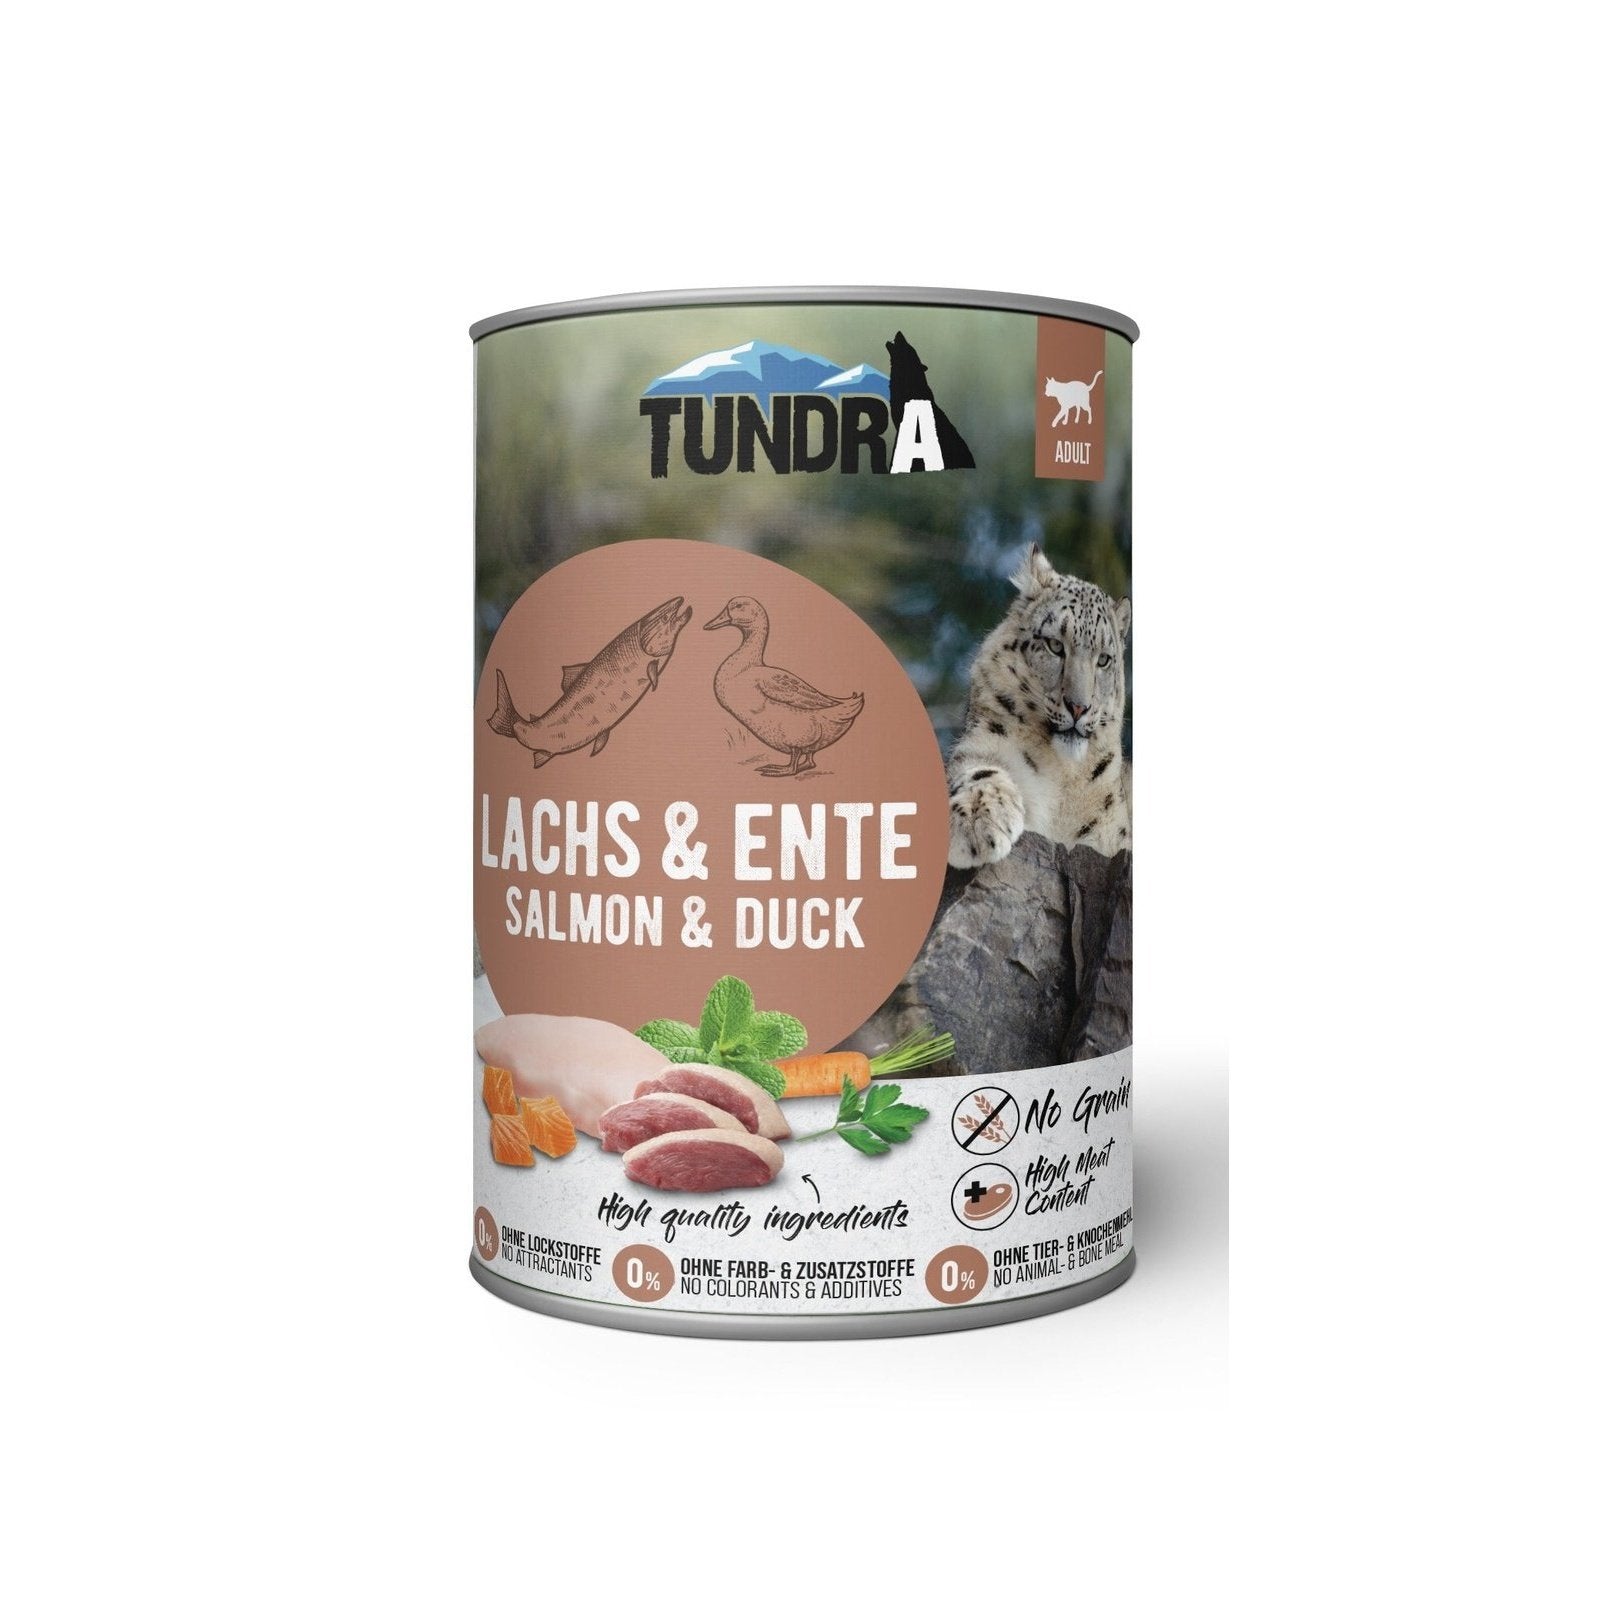 Artikel mit dem Namen Tundra Katze Lachs & Ente Dose im Shop von zoo.de , dem Onlineshop für nachhaltiges Hundefutter und Katzenfutter.